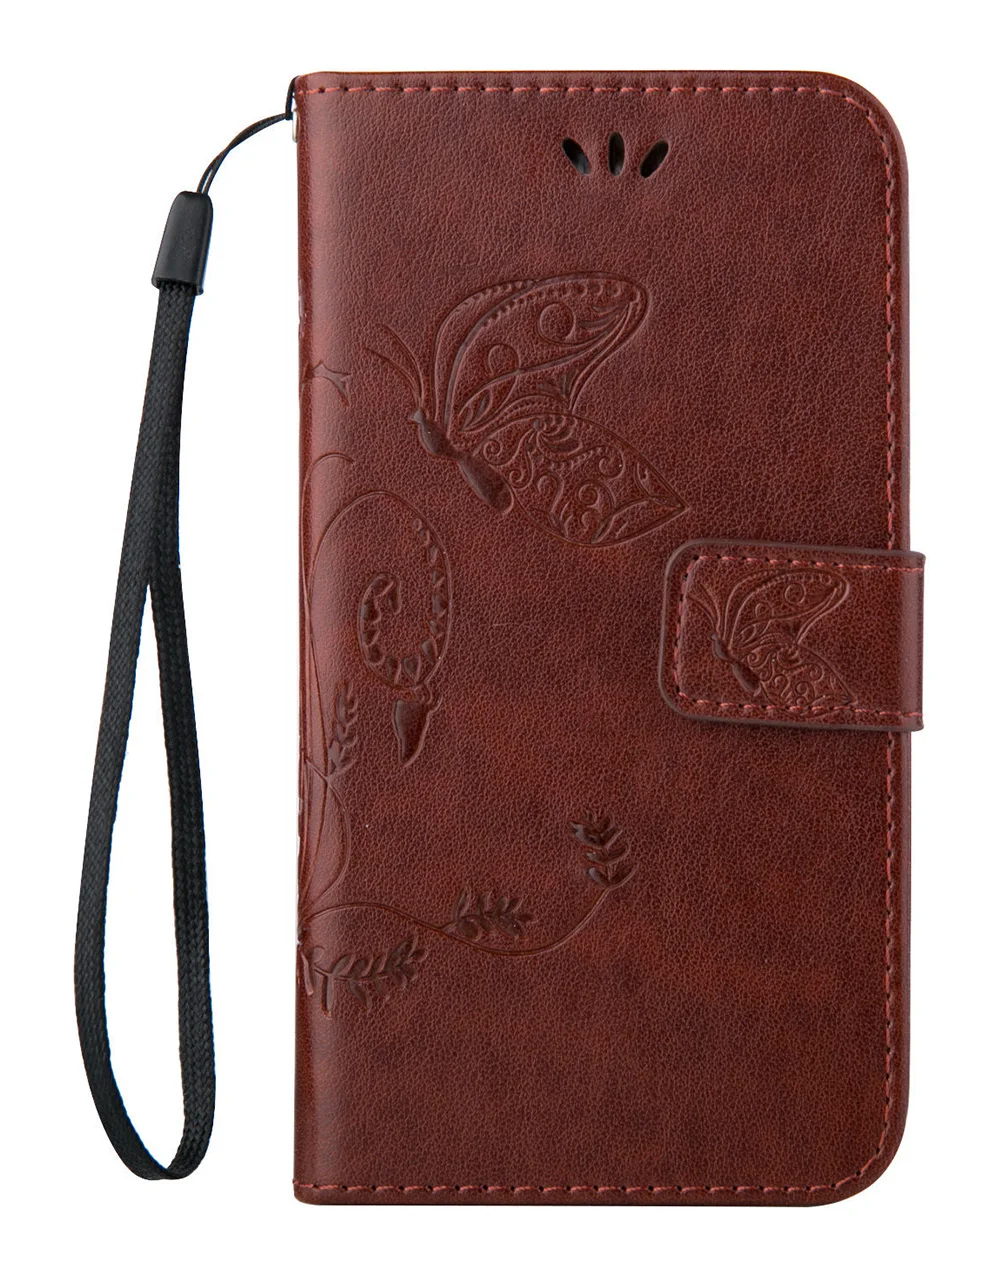 Чехол-кошелек s Mobile для Cubot J3 Pro Nova Plus R9 P20 power R11 H3 X18 Note S Magic флип кожаный защитный чехол для телефона - Цвет: Dark Brown